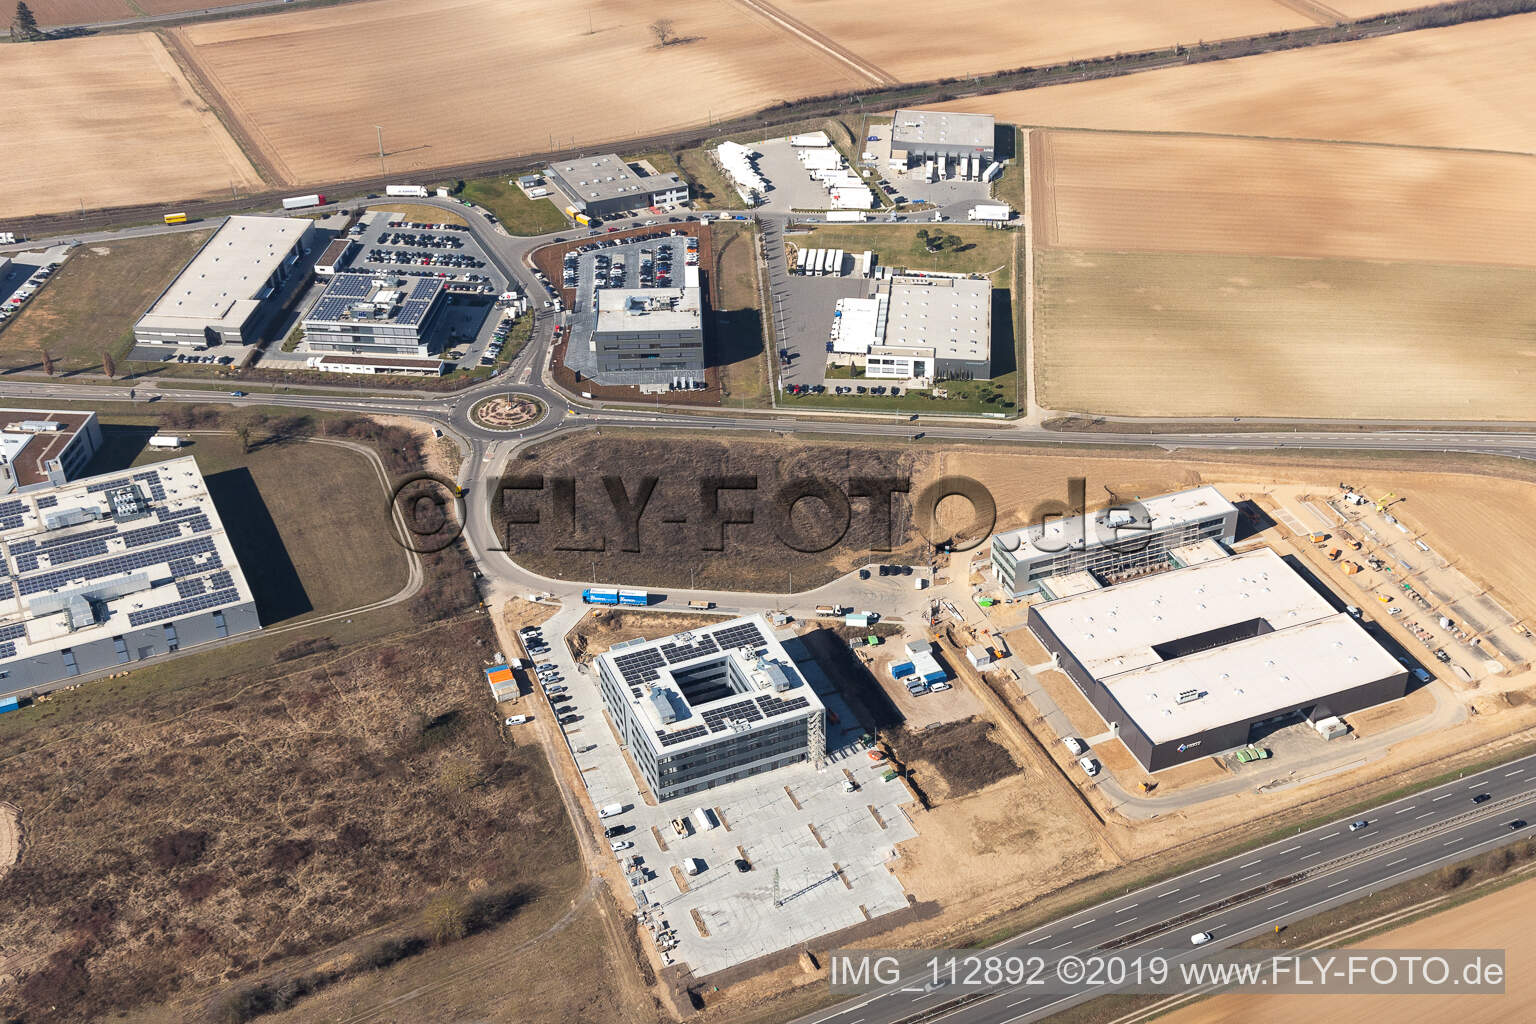 Vue aérienne de Nouveau bâtiment - chantier de construction des bâtiments et des halls de production de l'usine Eizo GmbH dans la zone industrielle nord à Rülzheim dans le département Rhénanie-Palatinat, Allemagne